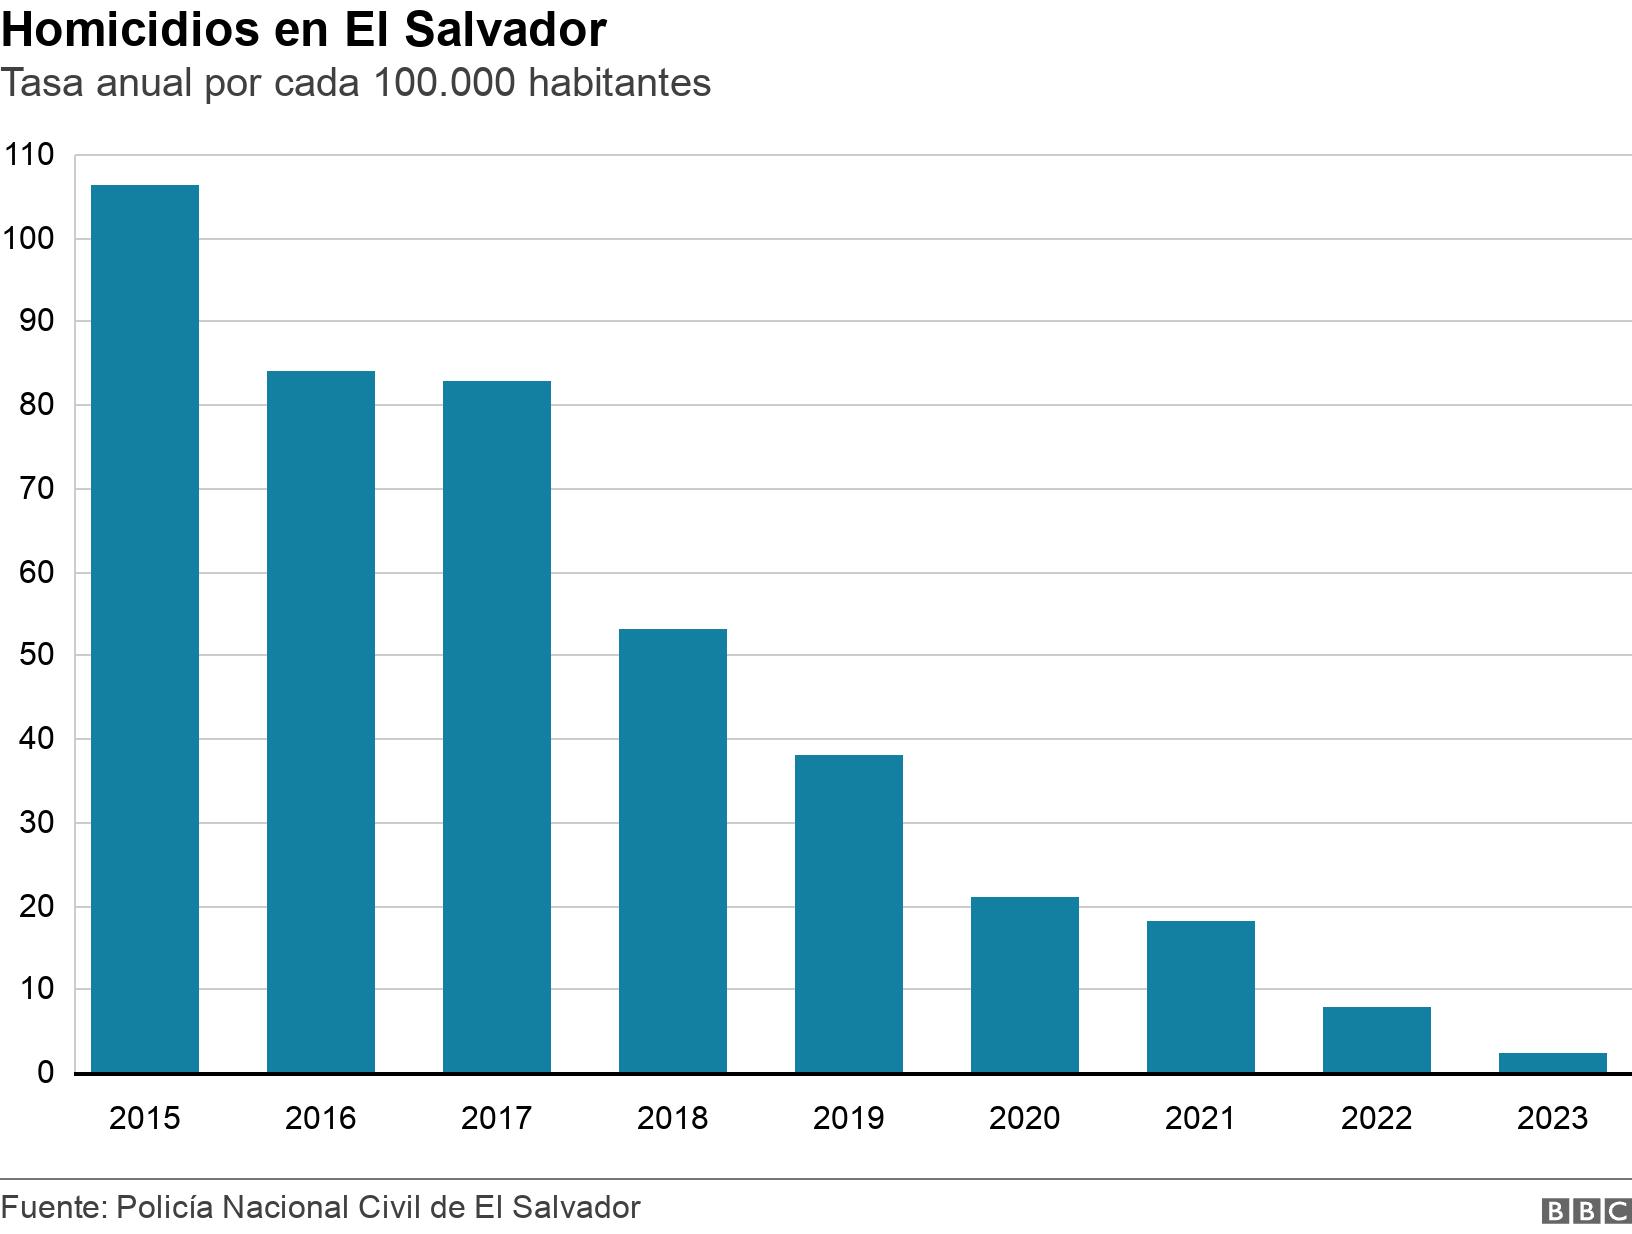 Homicidios en El Salvador. Tasa anual por cada 100.000 habitantes. Homicidios en El Salvador, tasa anual por cada 100.000 habitantes .